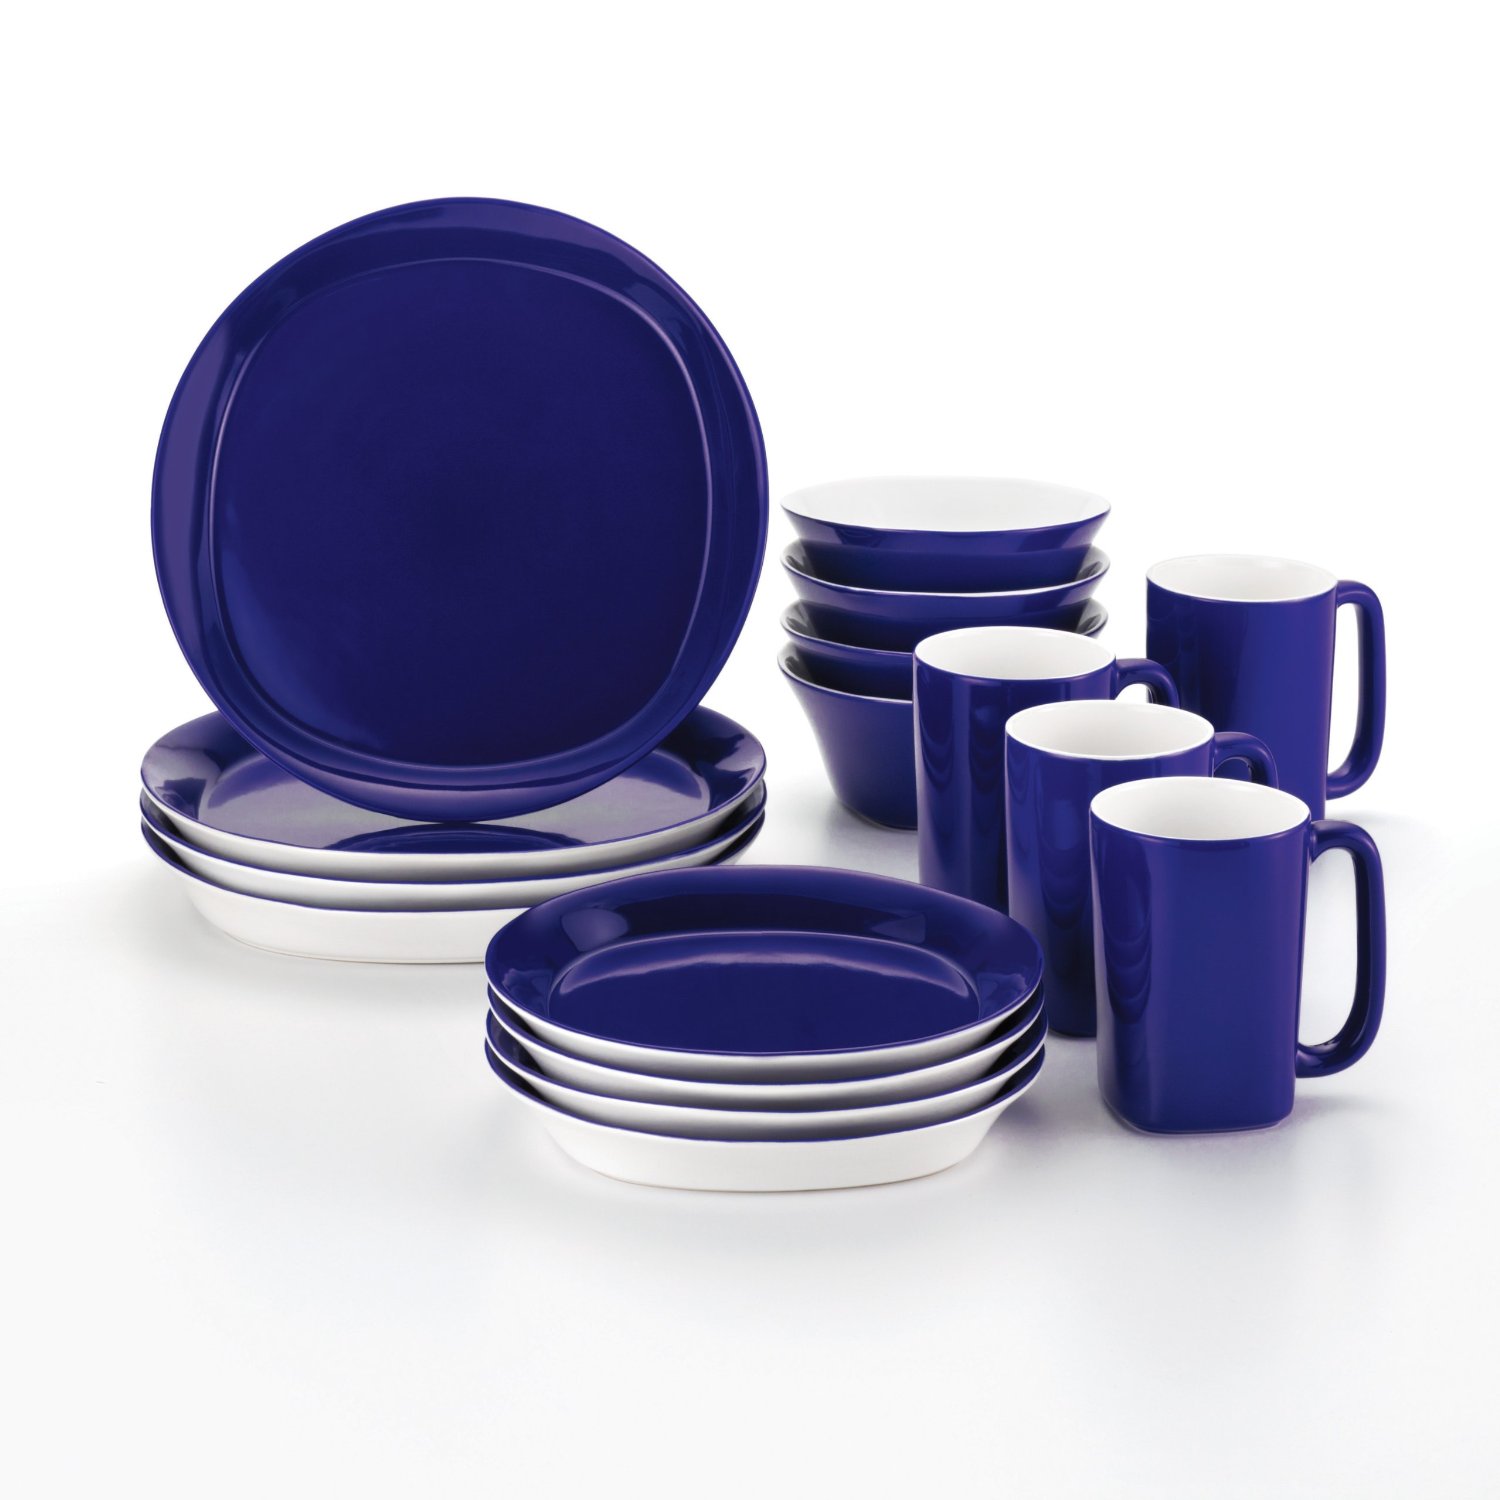 Купить синюю крышку. Stoneware Dinnerware Set посуда. Посуда синего цвета. Набор посуды синего цвета. Набор тарелок синий цвет.